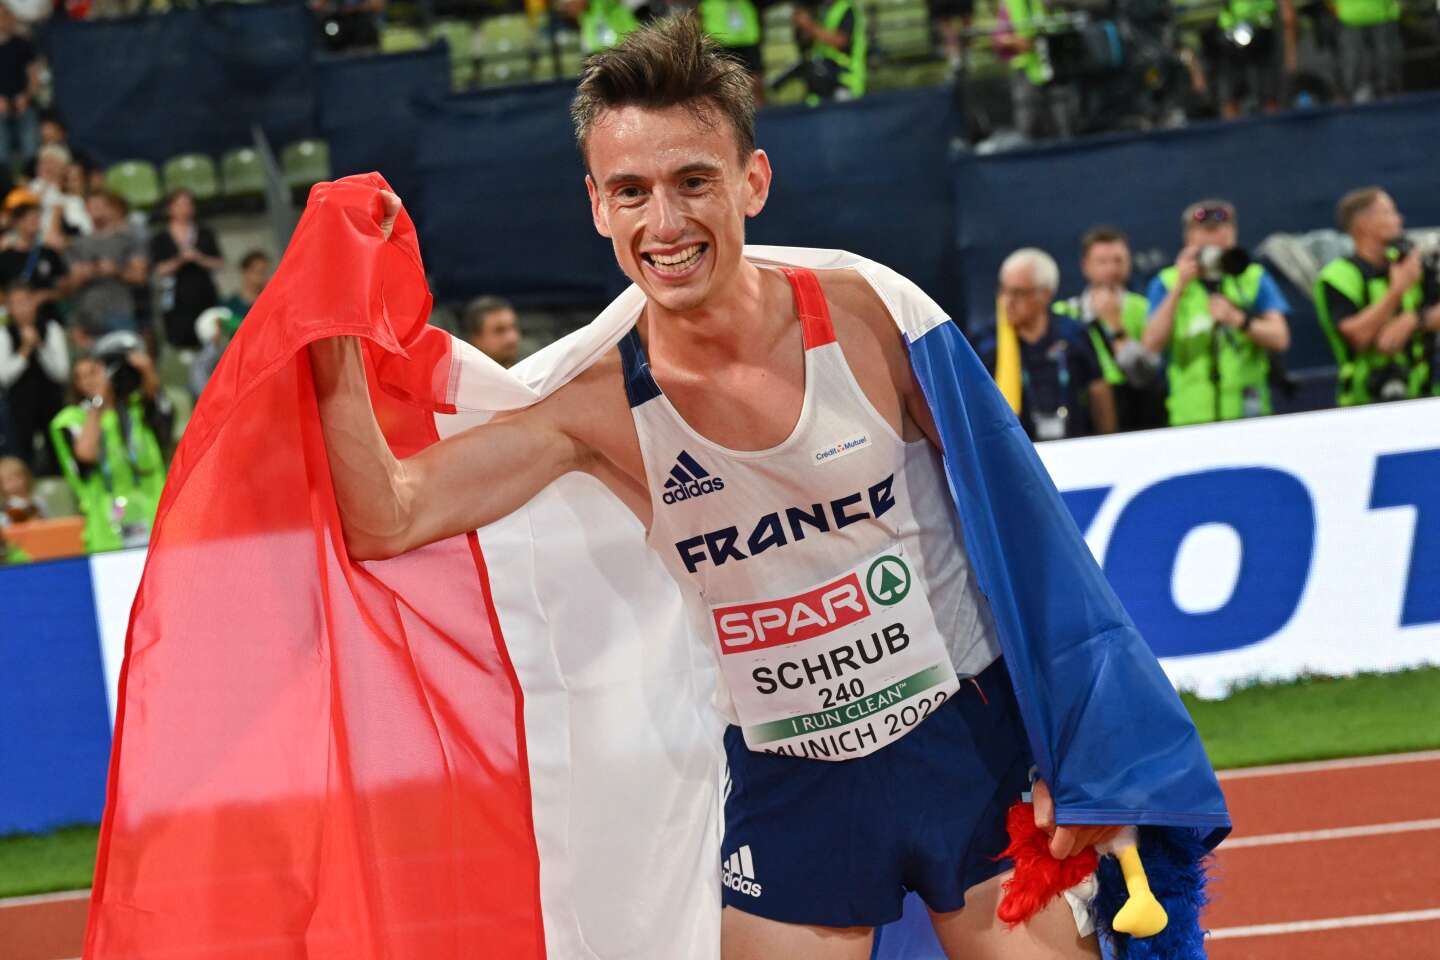 Photo of Yann Schrub, medallista de bronce en los 10.000 m, el relevo 4×100 m masculino francés se lleva la plata